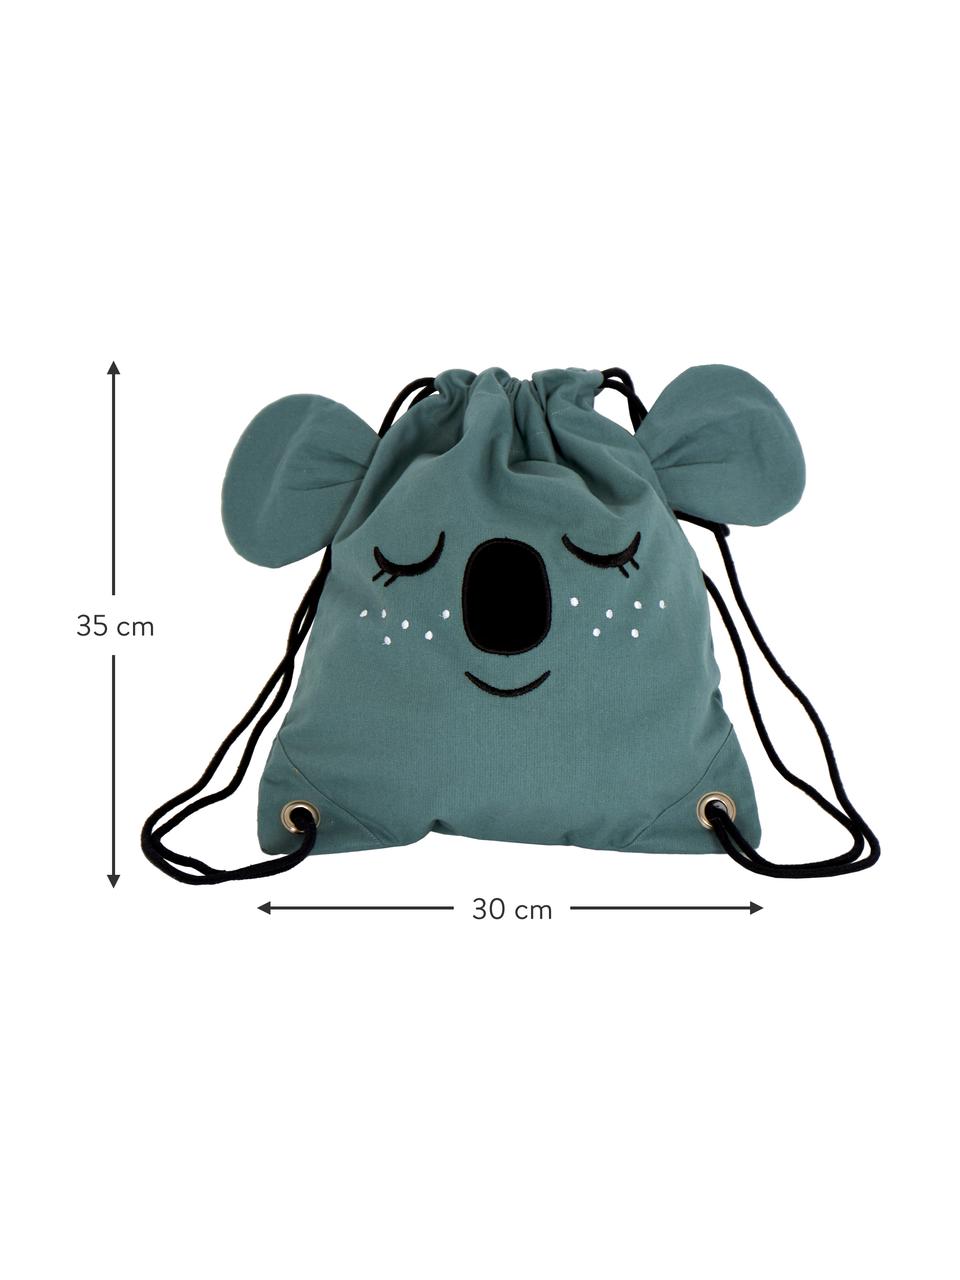 Sac à dos pour enfant Koala, 100 % coton bio, certifié GOTS, Bleu-gris, larg. 30 x haut. 35 cm